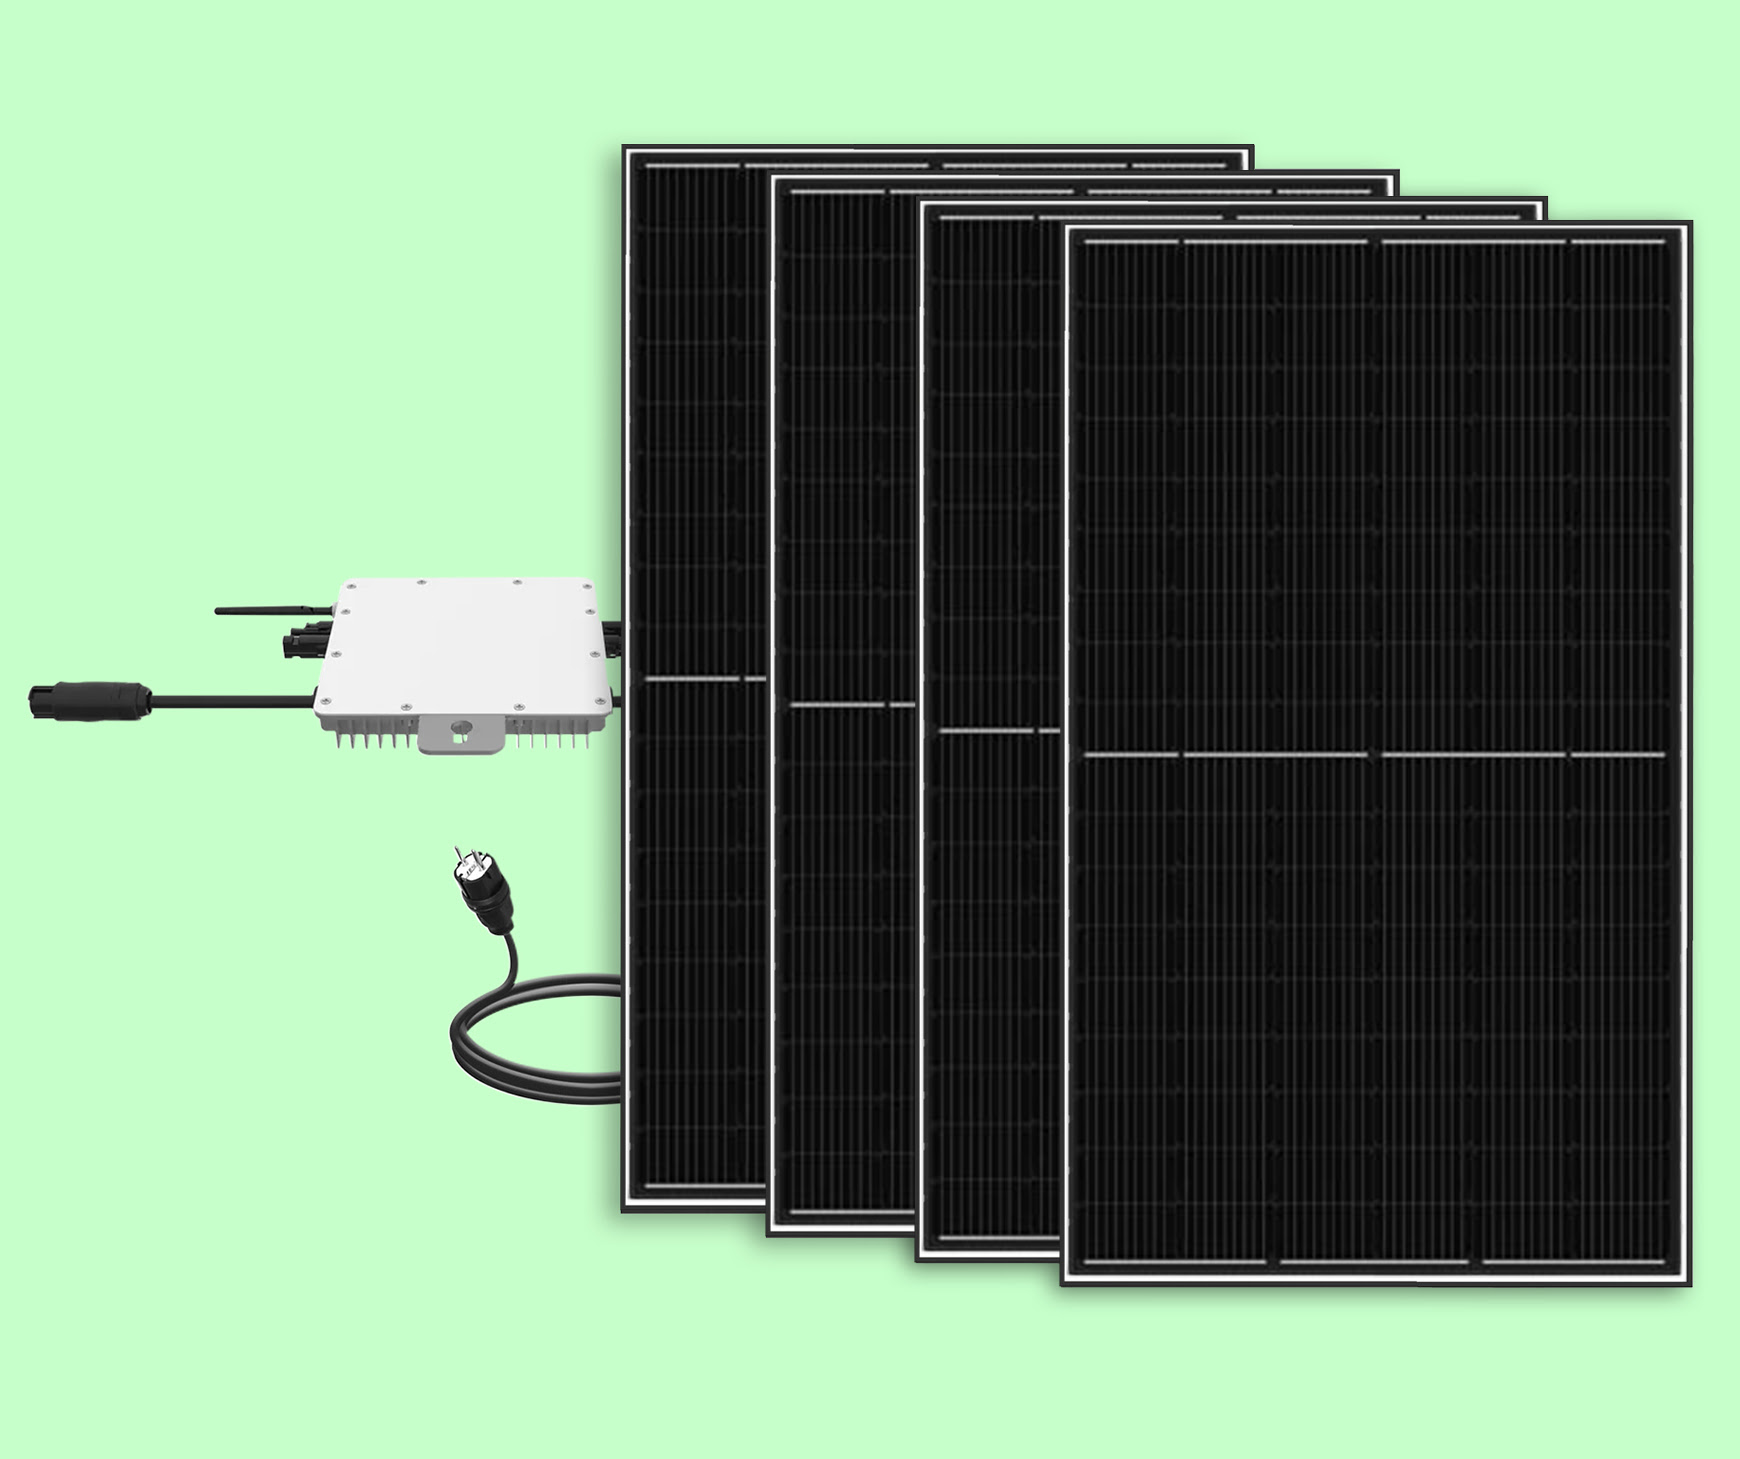 Solar-Wechselrichter für kleine Photovoltaik-Anlagen